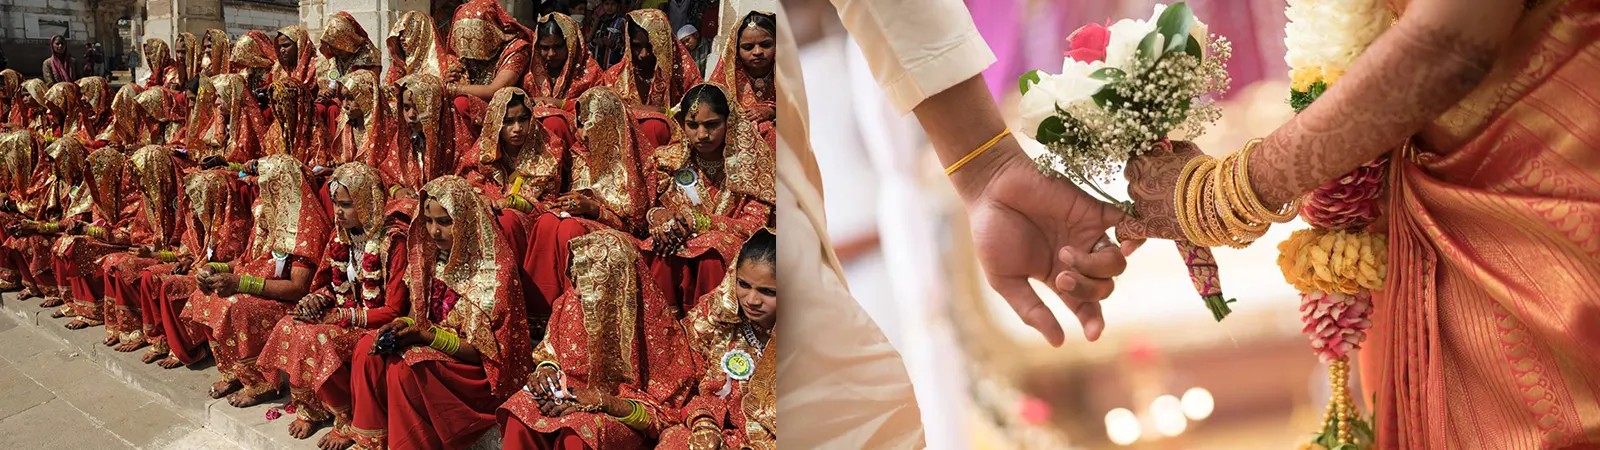 बहुविवाह होगा BAN : भारत में कितने लोग एक से अधिक शादियाँ करते हैं? जानें किन राज्यों में है सबसे ज़्यादा चलन